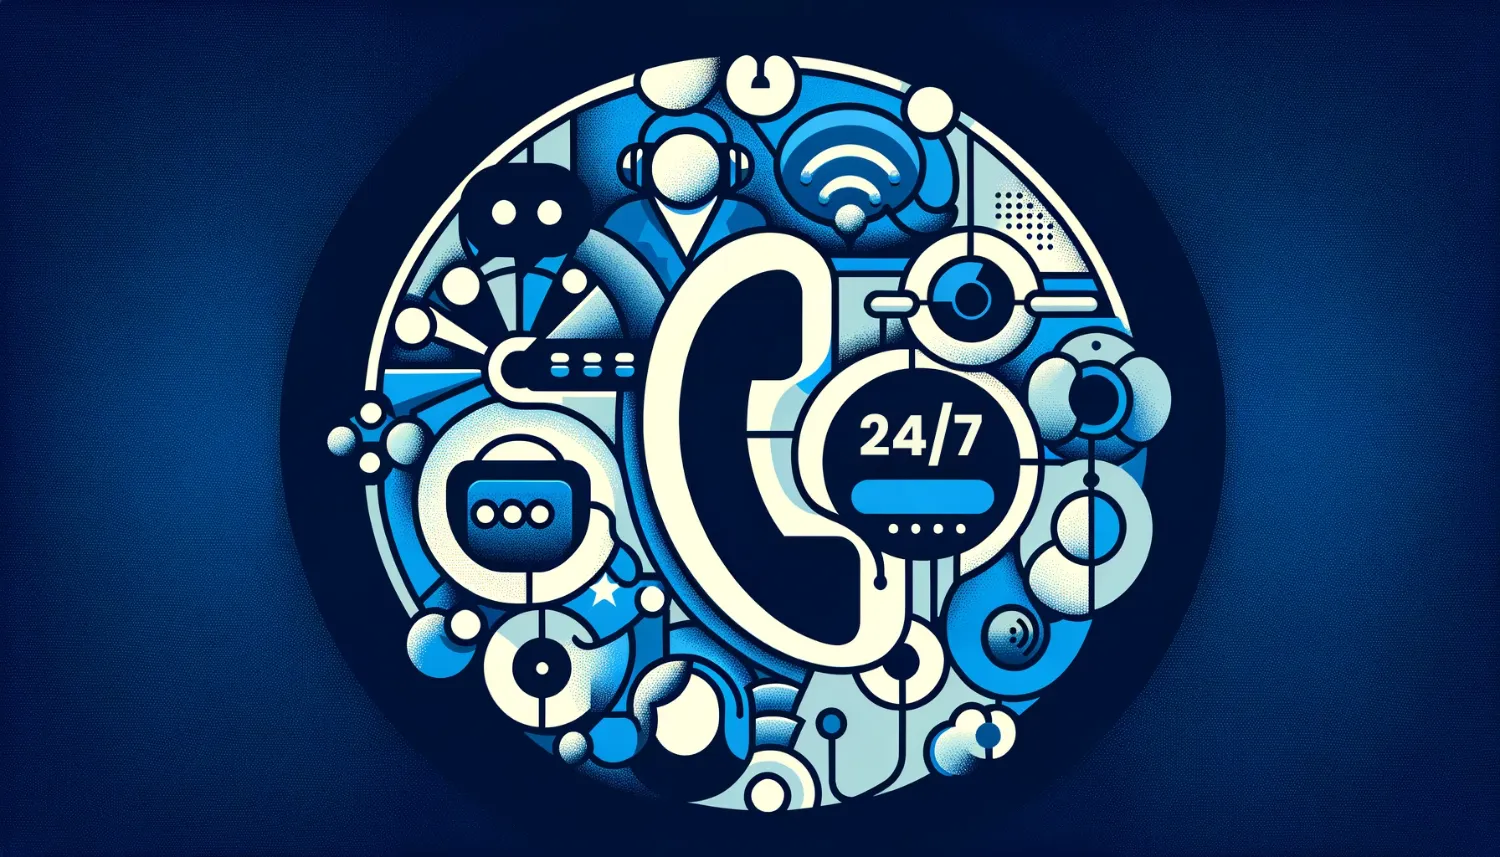 Ilustrasi layanan customer support 24/7 di hosting, desain minimalis, warna biru dominan, simbol dukungan pelanggan.